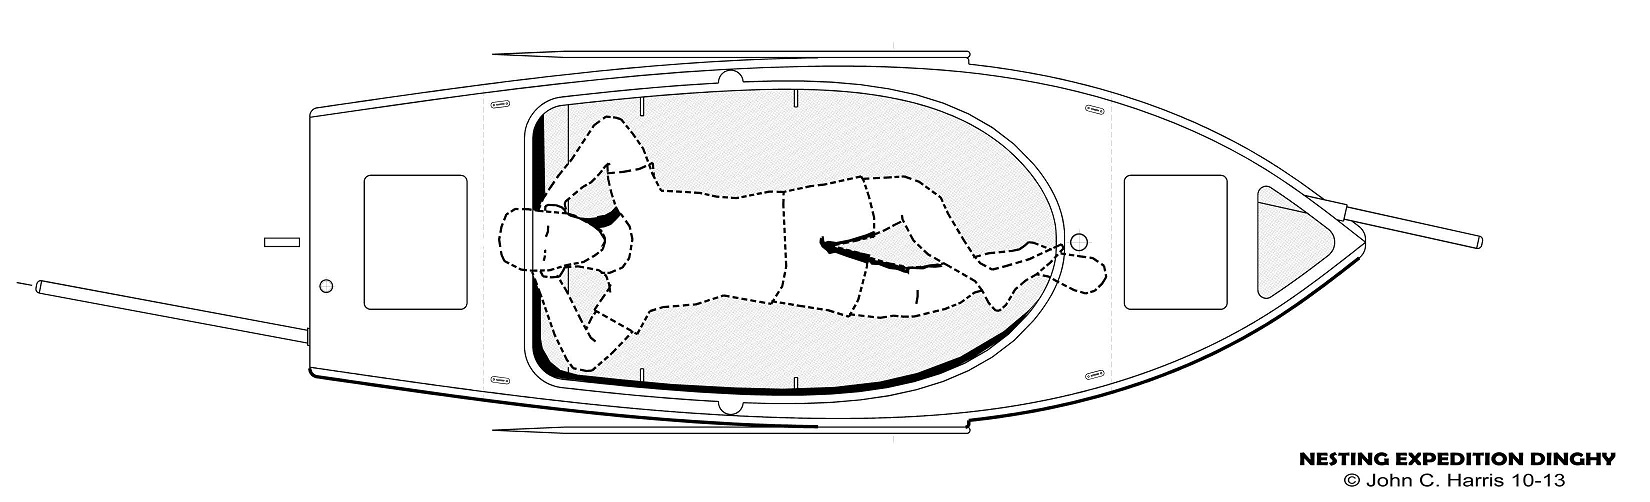 Le point de départ est donc la possibilité de dormir à bord du plus petit bateau possible. La longueur minimum de l'espace ouvert et plat au fond du cockpit est donc de 1.90 m. Il s'agit d'un double fond plat, car le fond de la coque est occupé par les réservoirs du ballast liquide. 